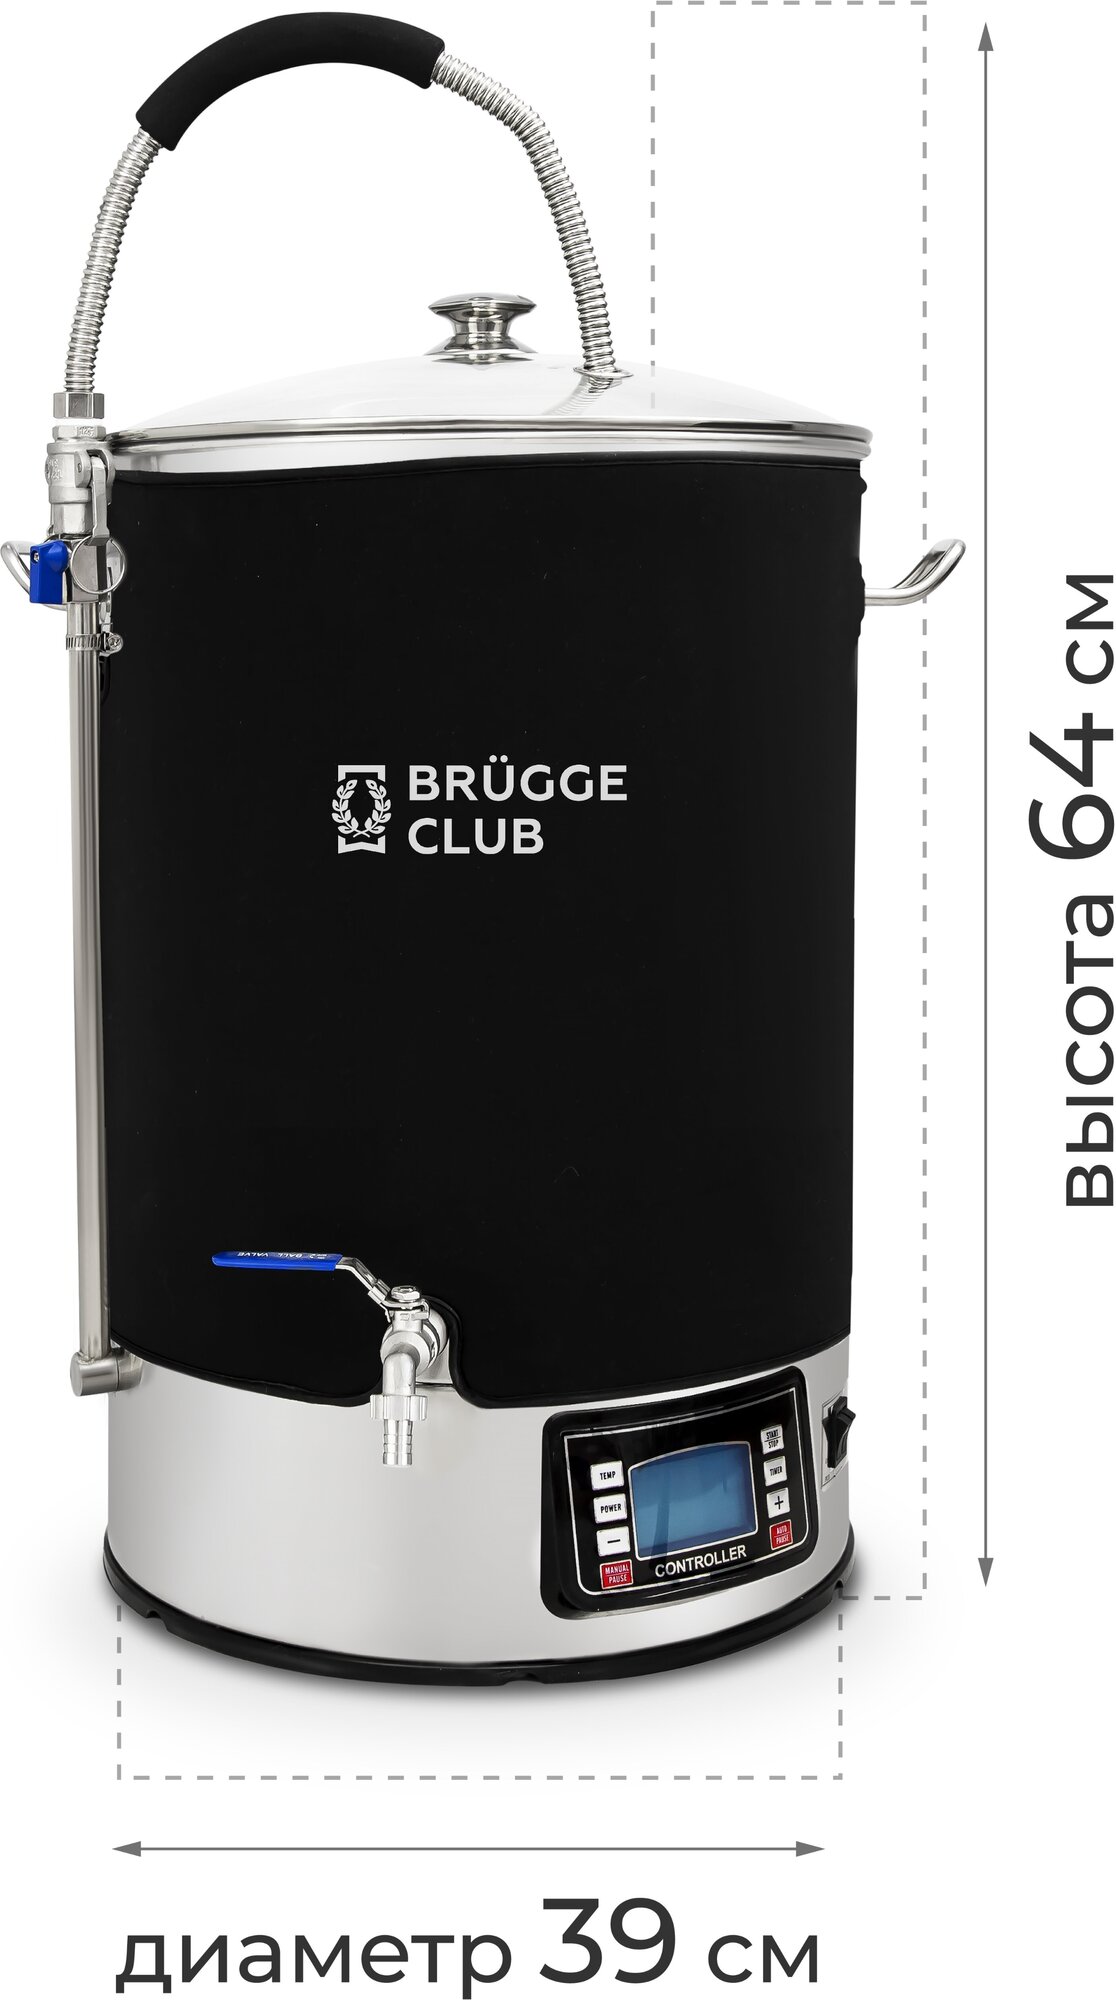 Домашняя автоматическая мини пивоварня "Brugge" 40 литров с цифровым блоком управления - фотография № 20